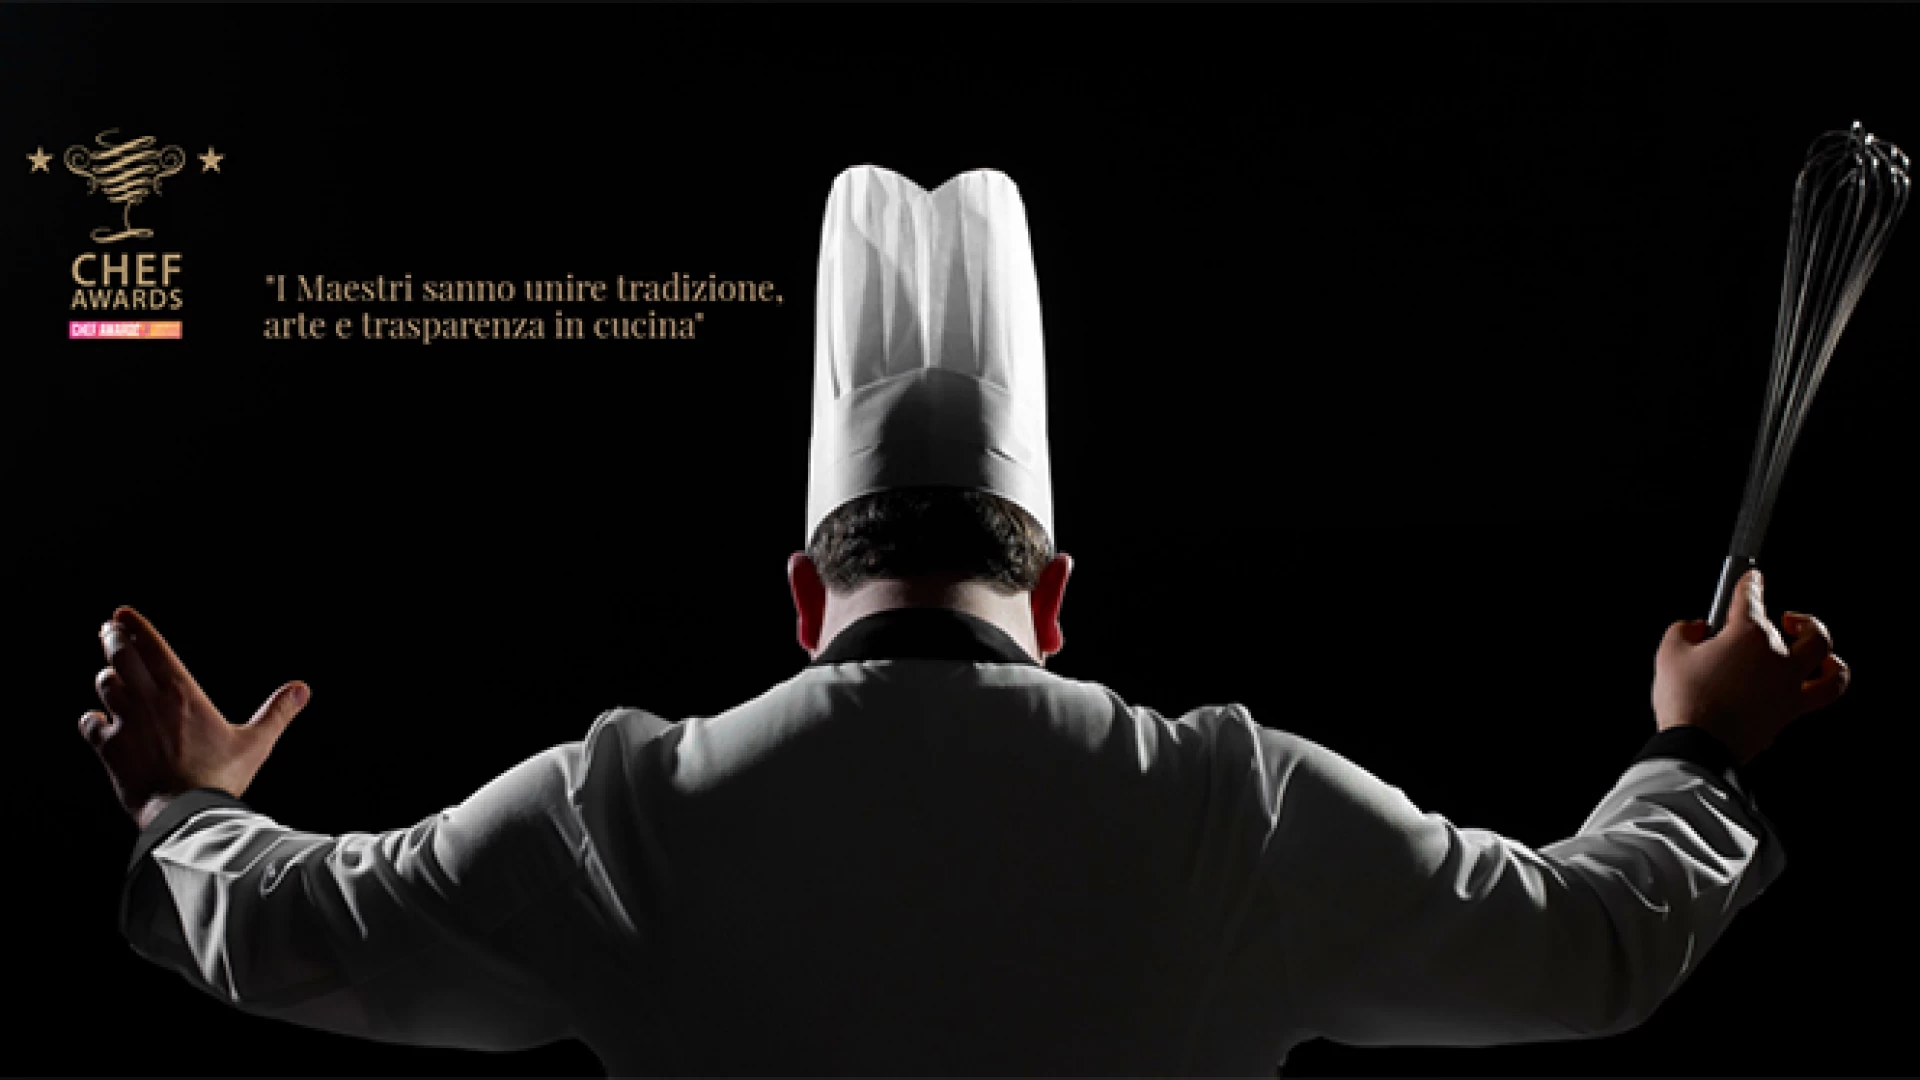 Chef Awards 2018 , Stefano Rufo alla presentazione dell’evento. Celebrati i migliori ristoranti italiani con la più alta web reputation.